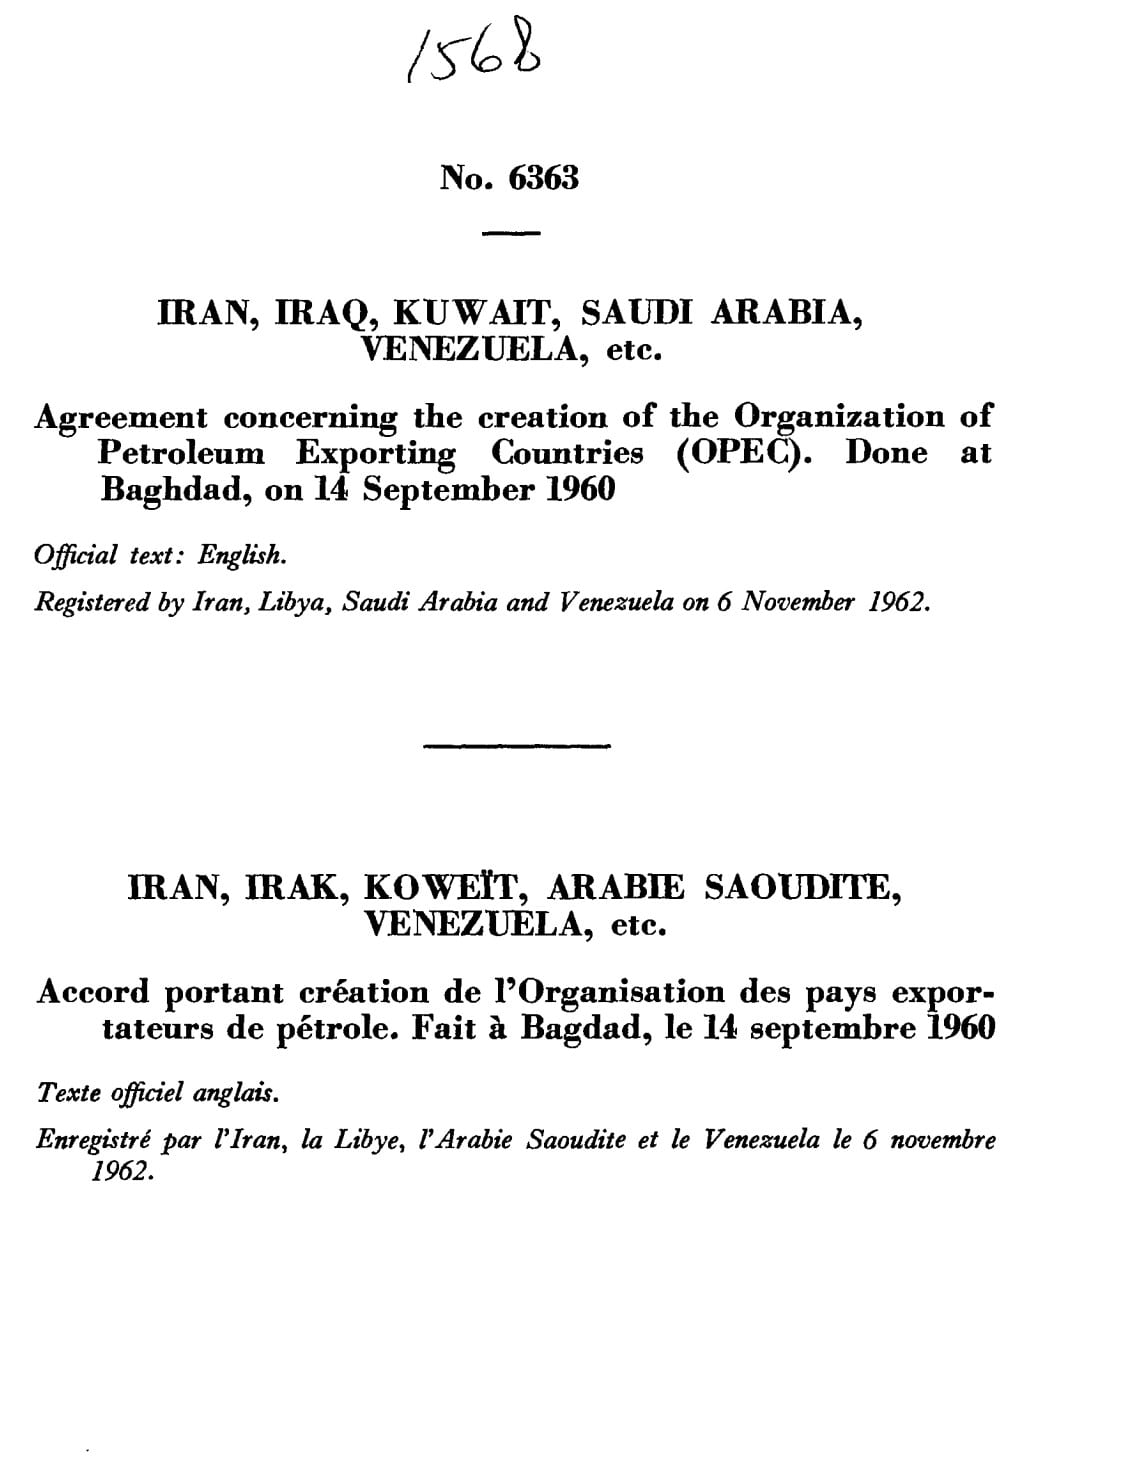 OPEC Treaty, September 14, 1960